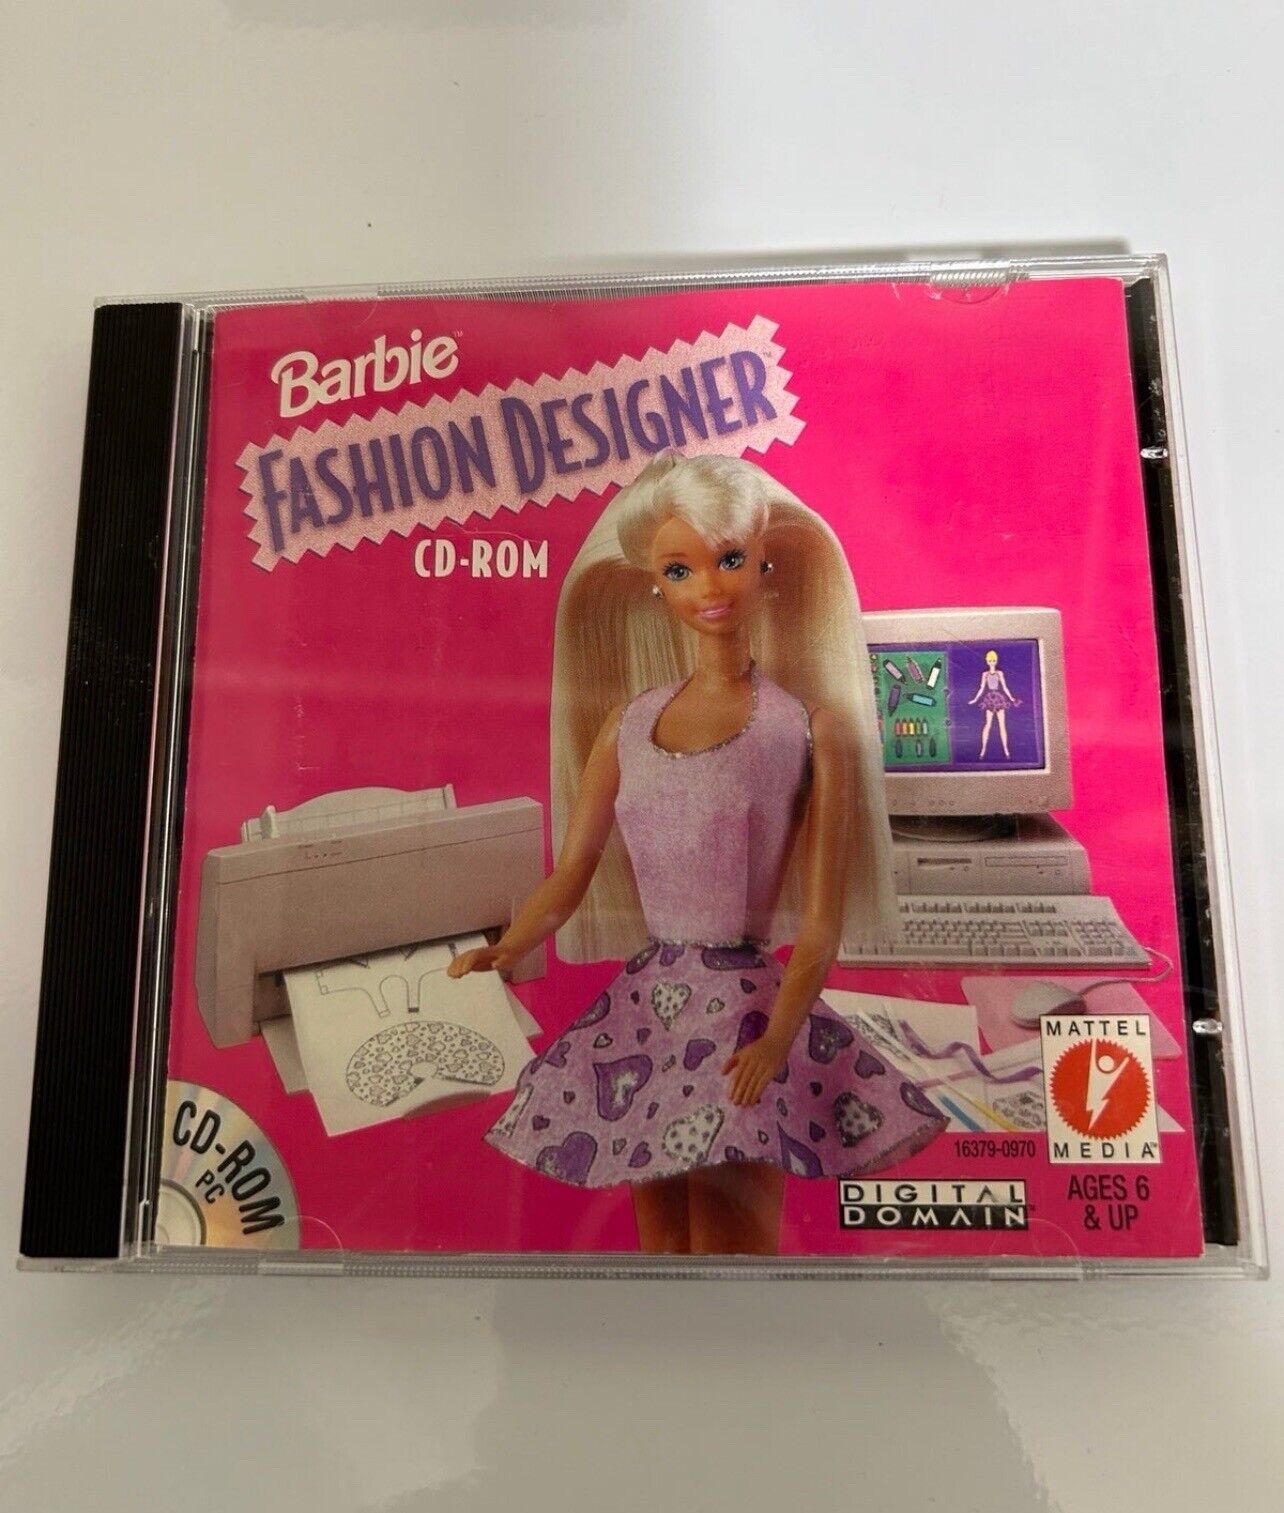 Vintage Barbie Fashion Designer cdrom for pc